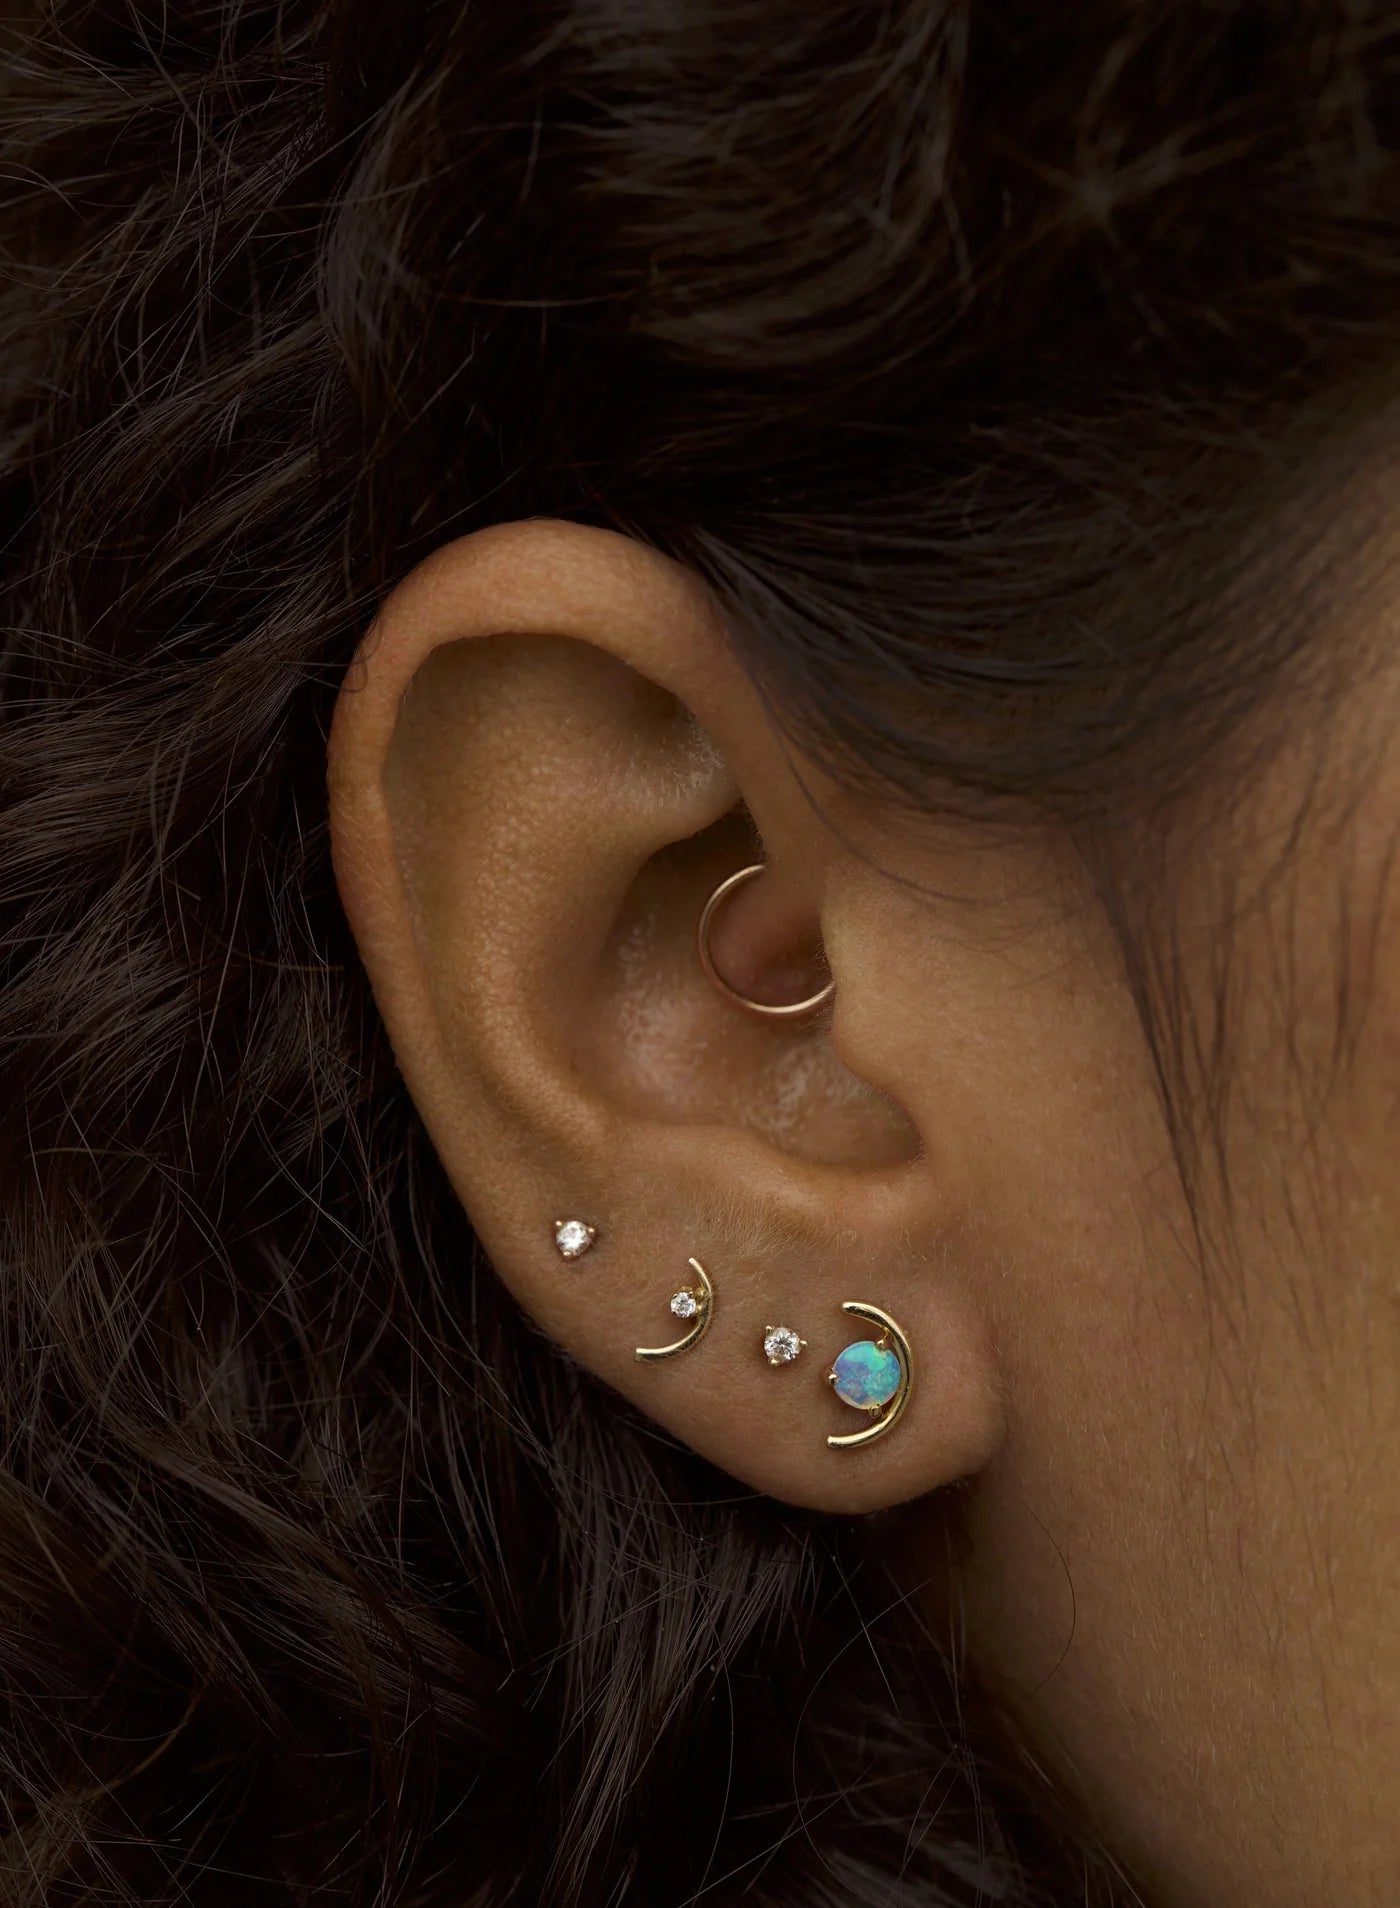 wwake / large opal arc stud earrings